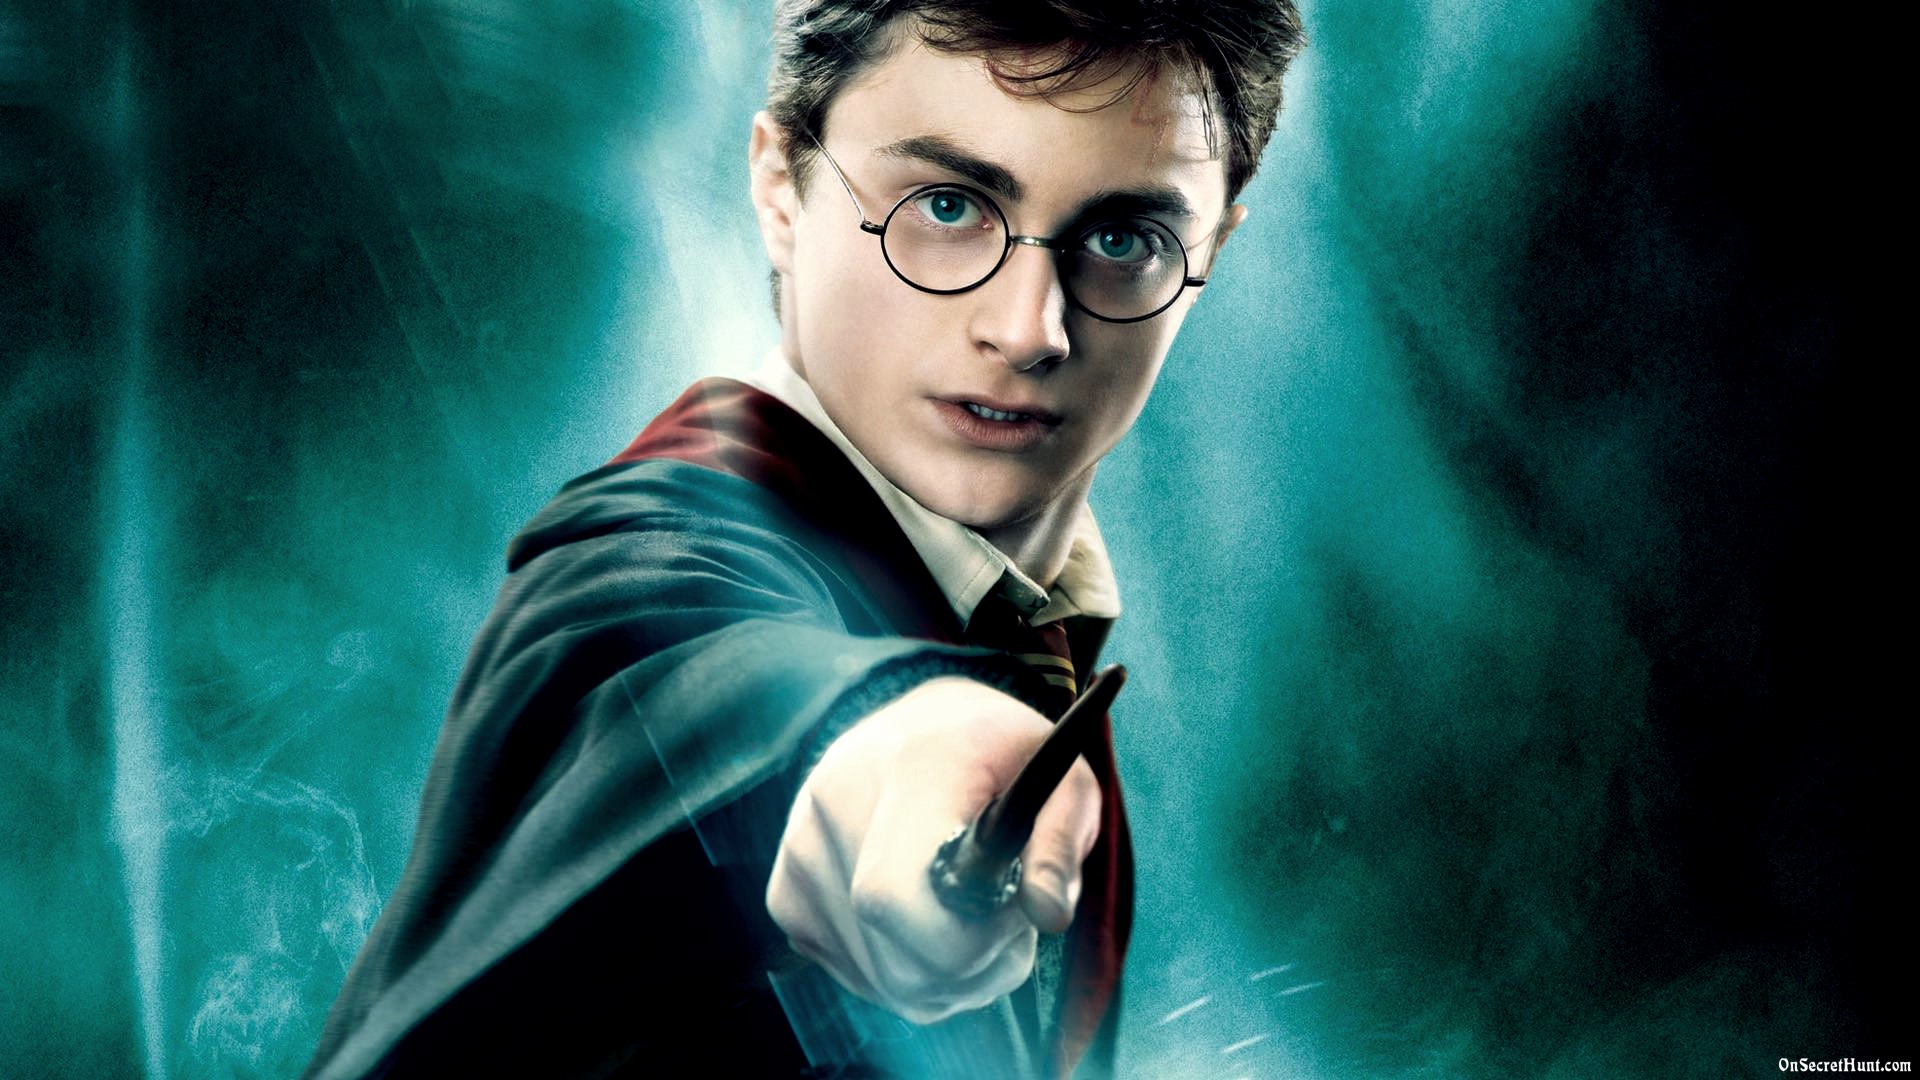 Além de dois novos livros, o universo de Harry Potter vai ganhar uma exposição comemorativa em Londres.